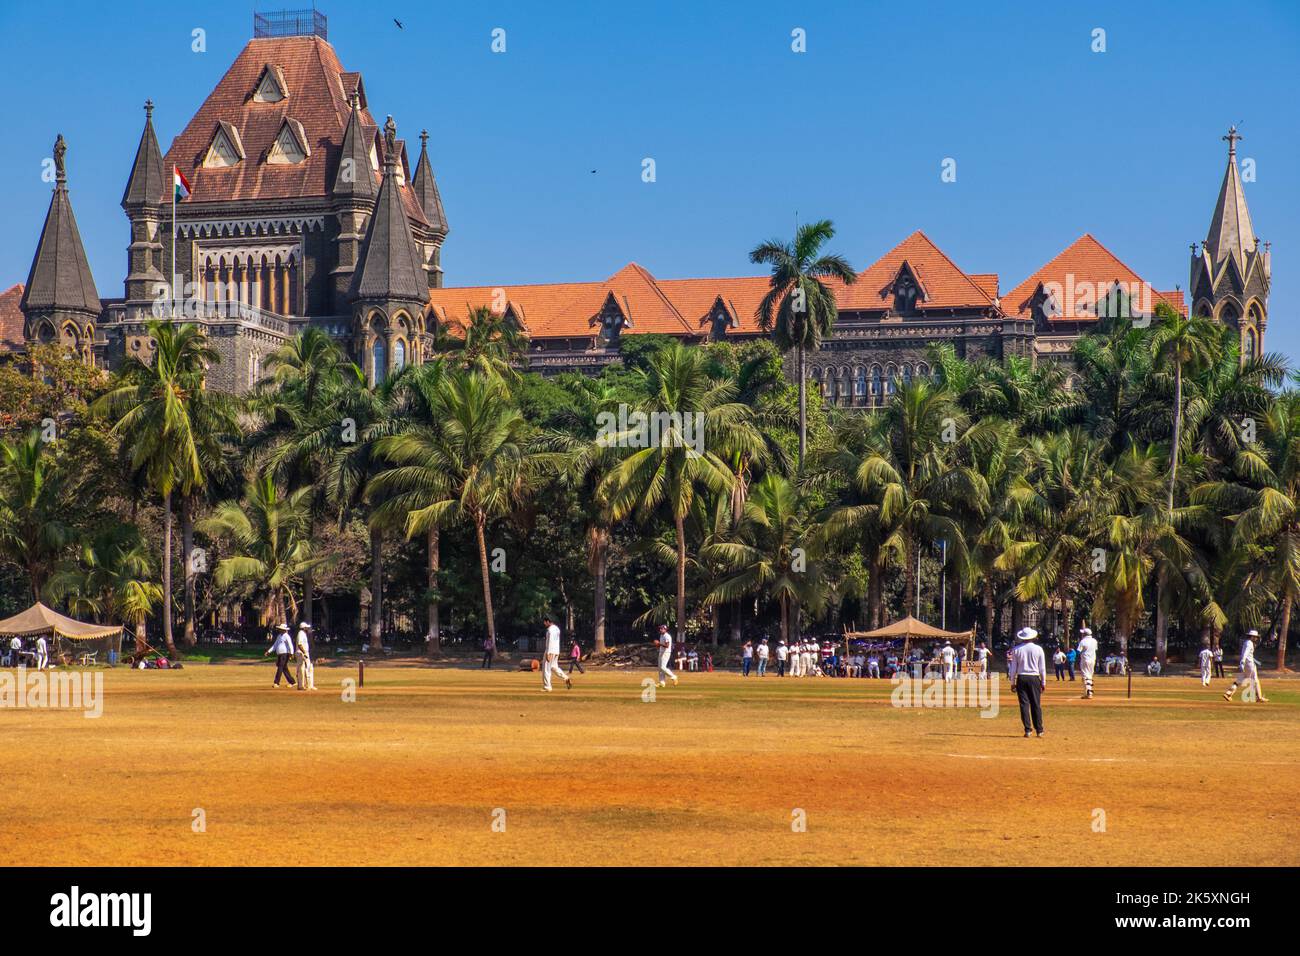 Cricket at the Oval Maidan in Mumbai / Bombay, India Stock Photo